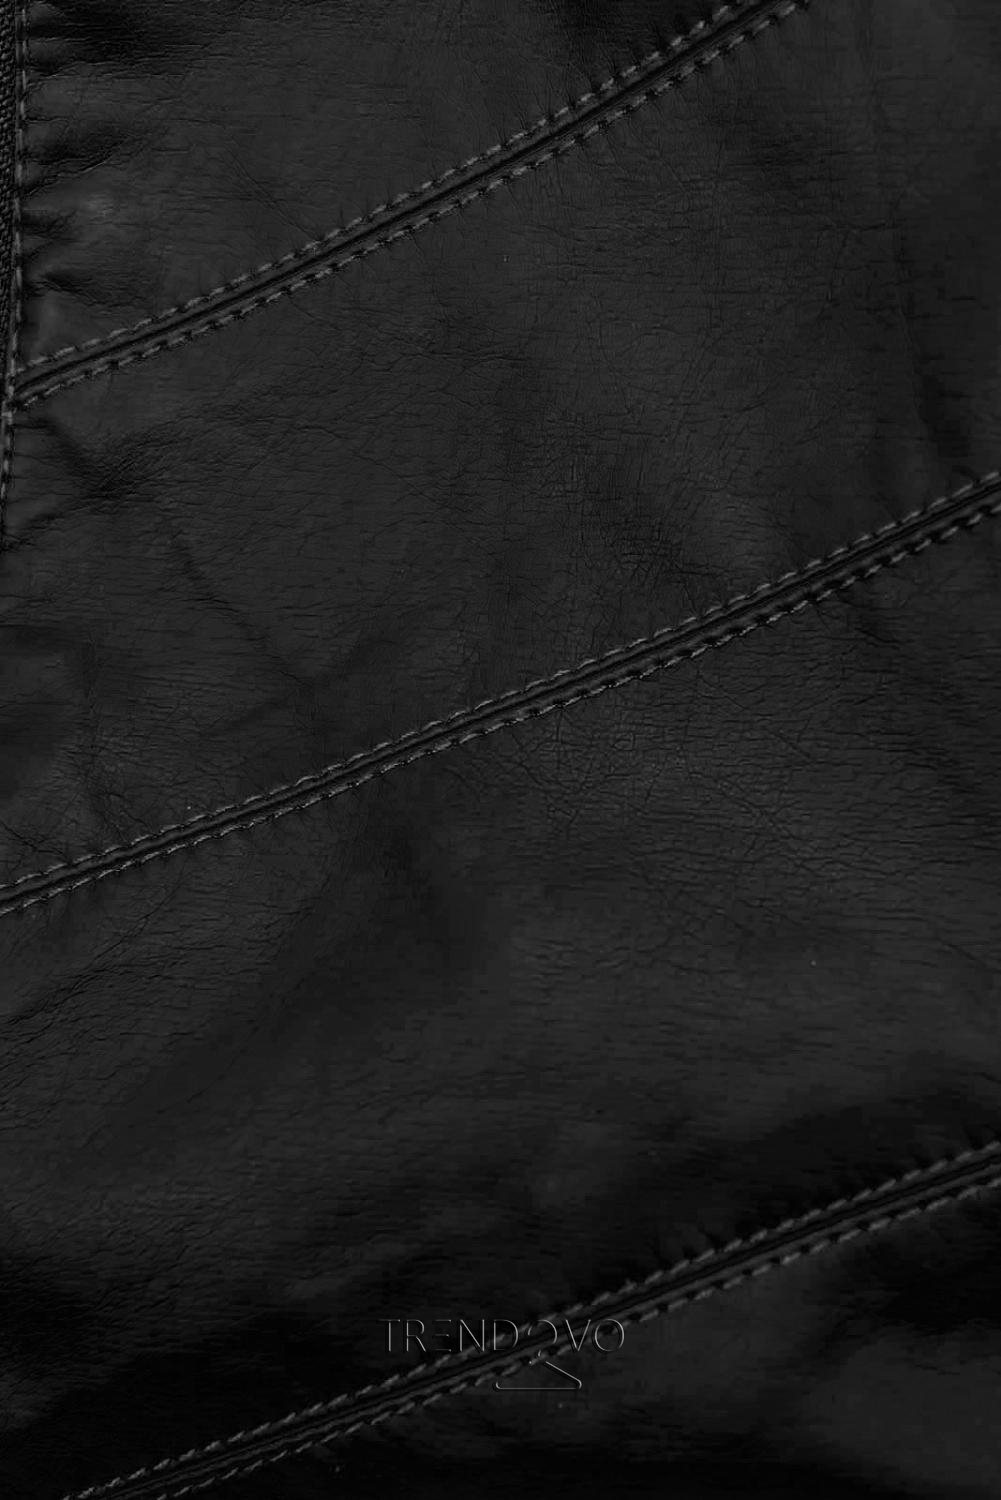 Černá koženková bunda